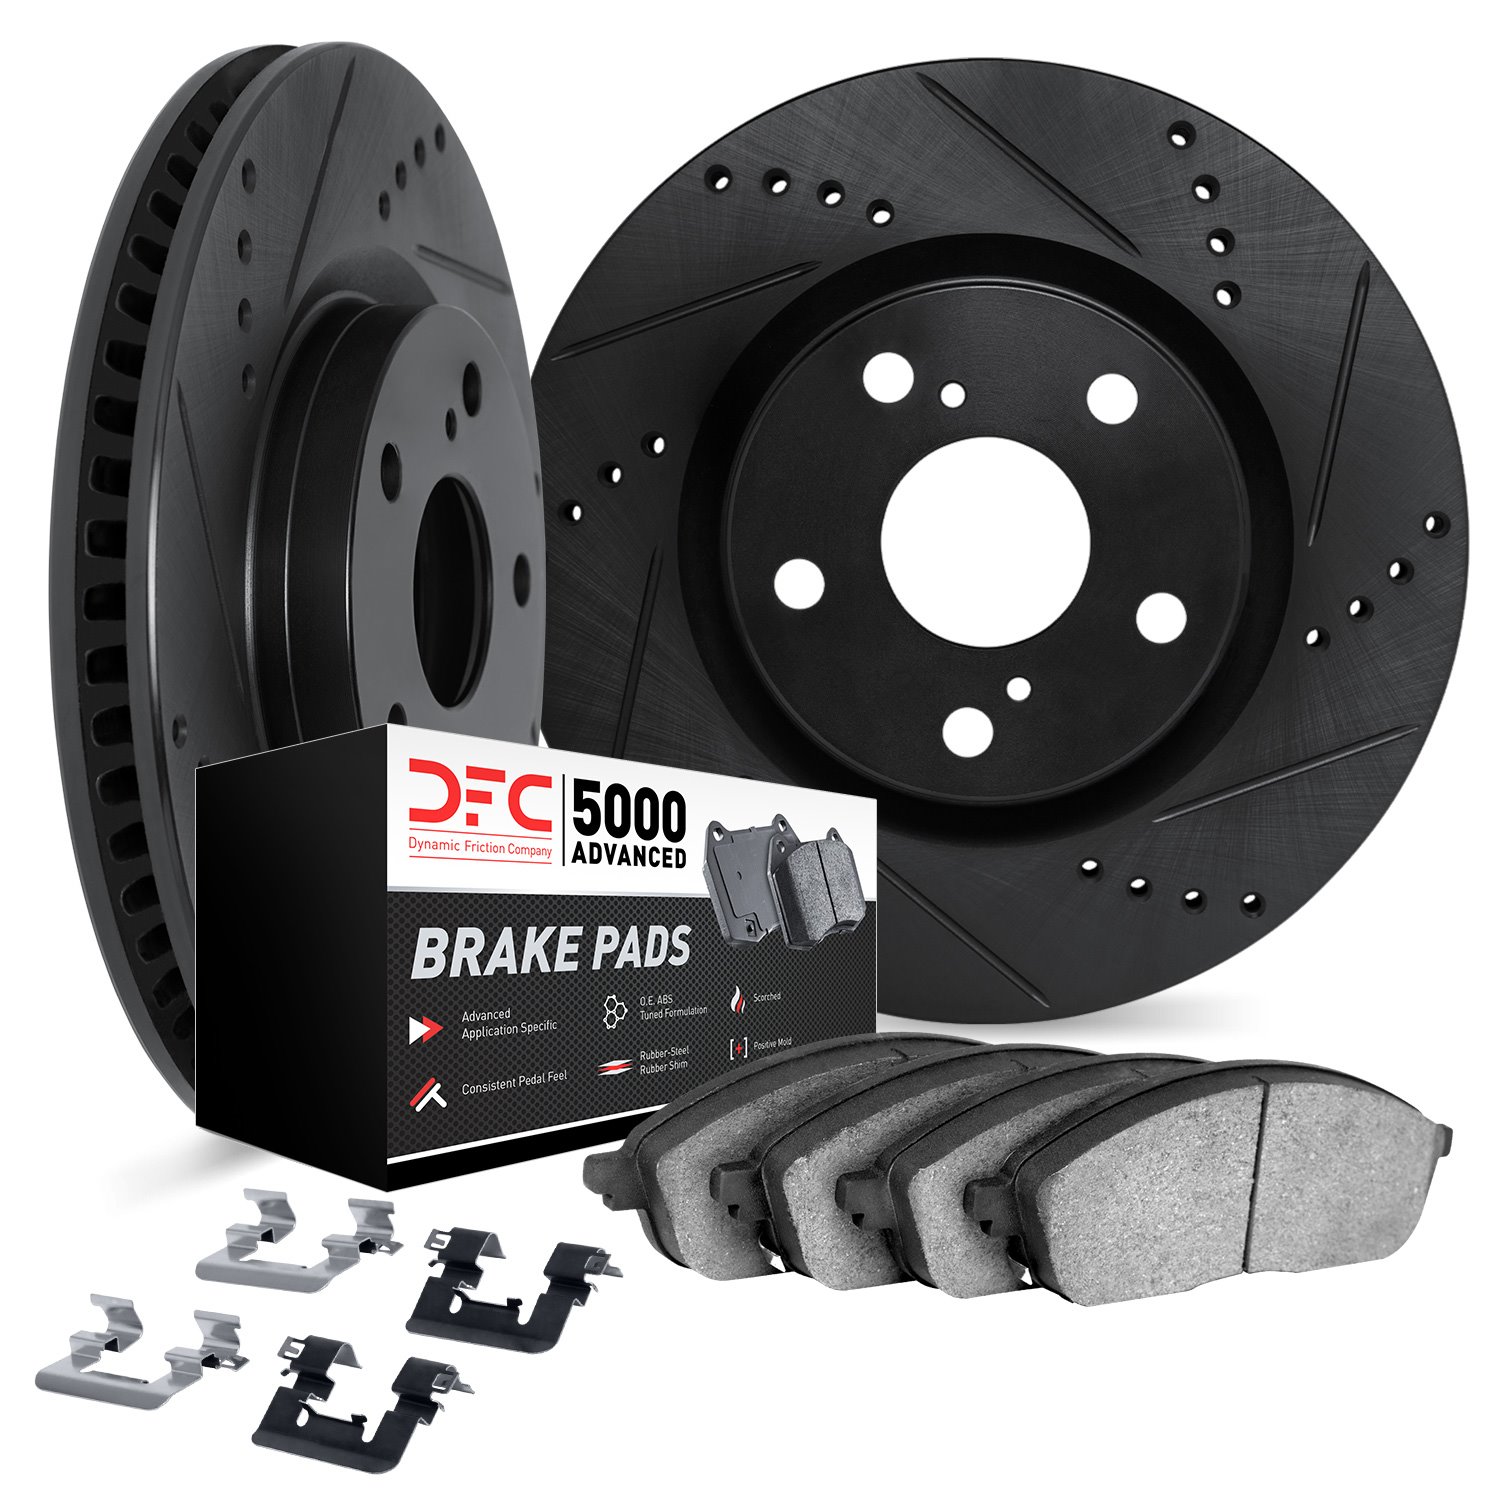 8512-42043 Drilled/Slotted Brake Rotors w/5000 Advanced Brake Pads Kit & Hardware [Black], 2014-2014 Mopar, Position: Front